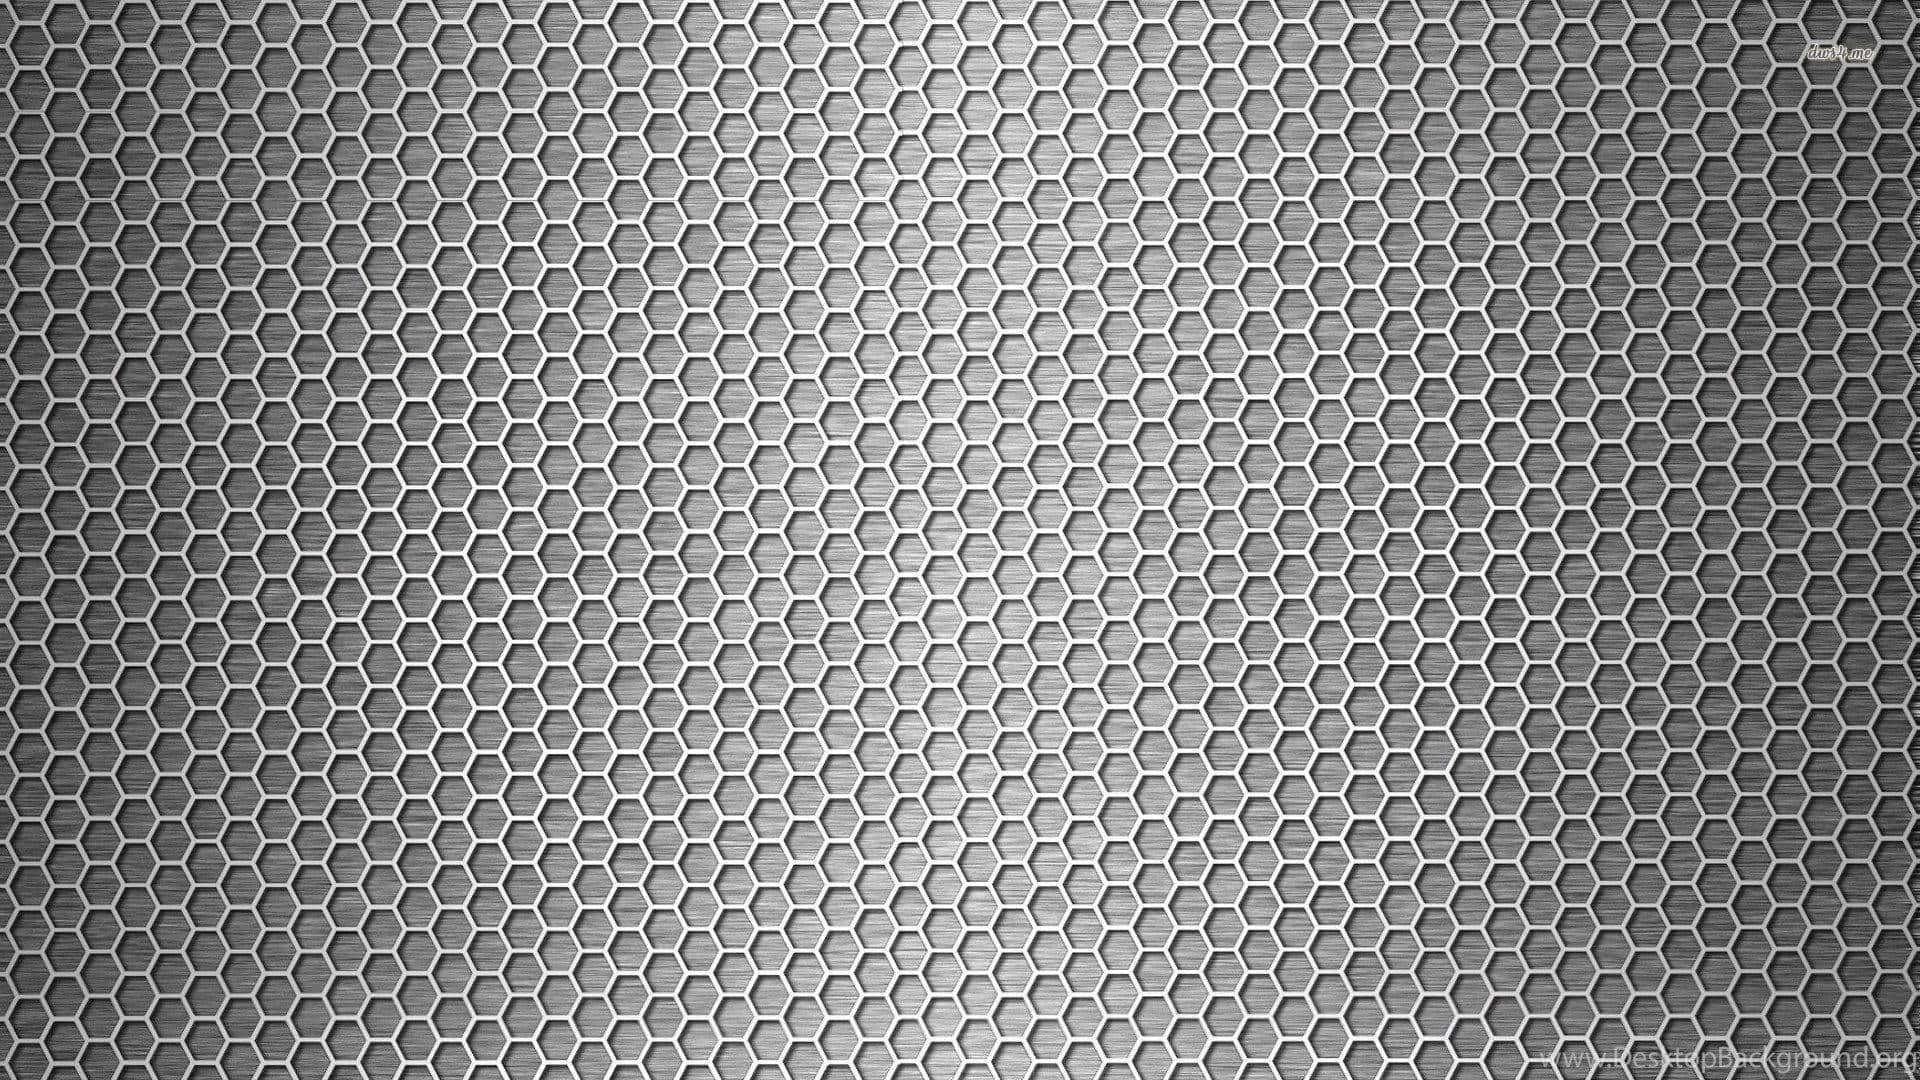 Sort Carbon Fiber 1920 X 1080 Wallpaper